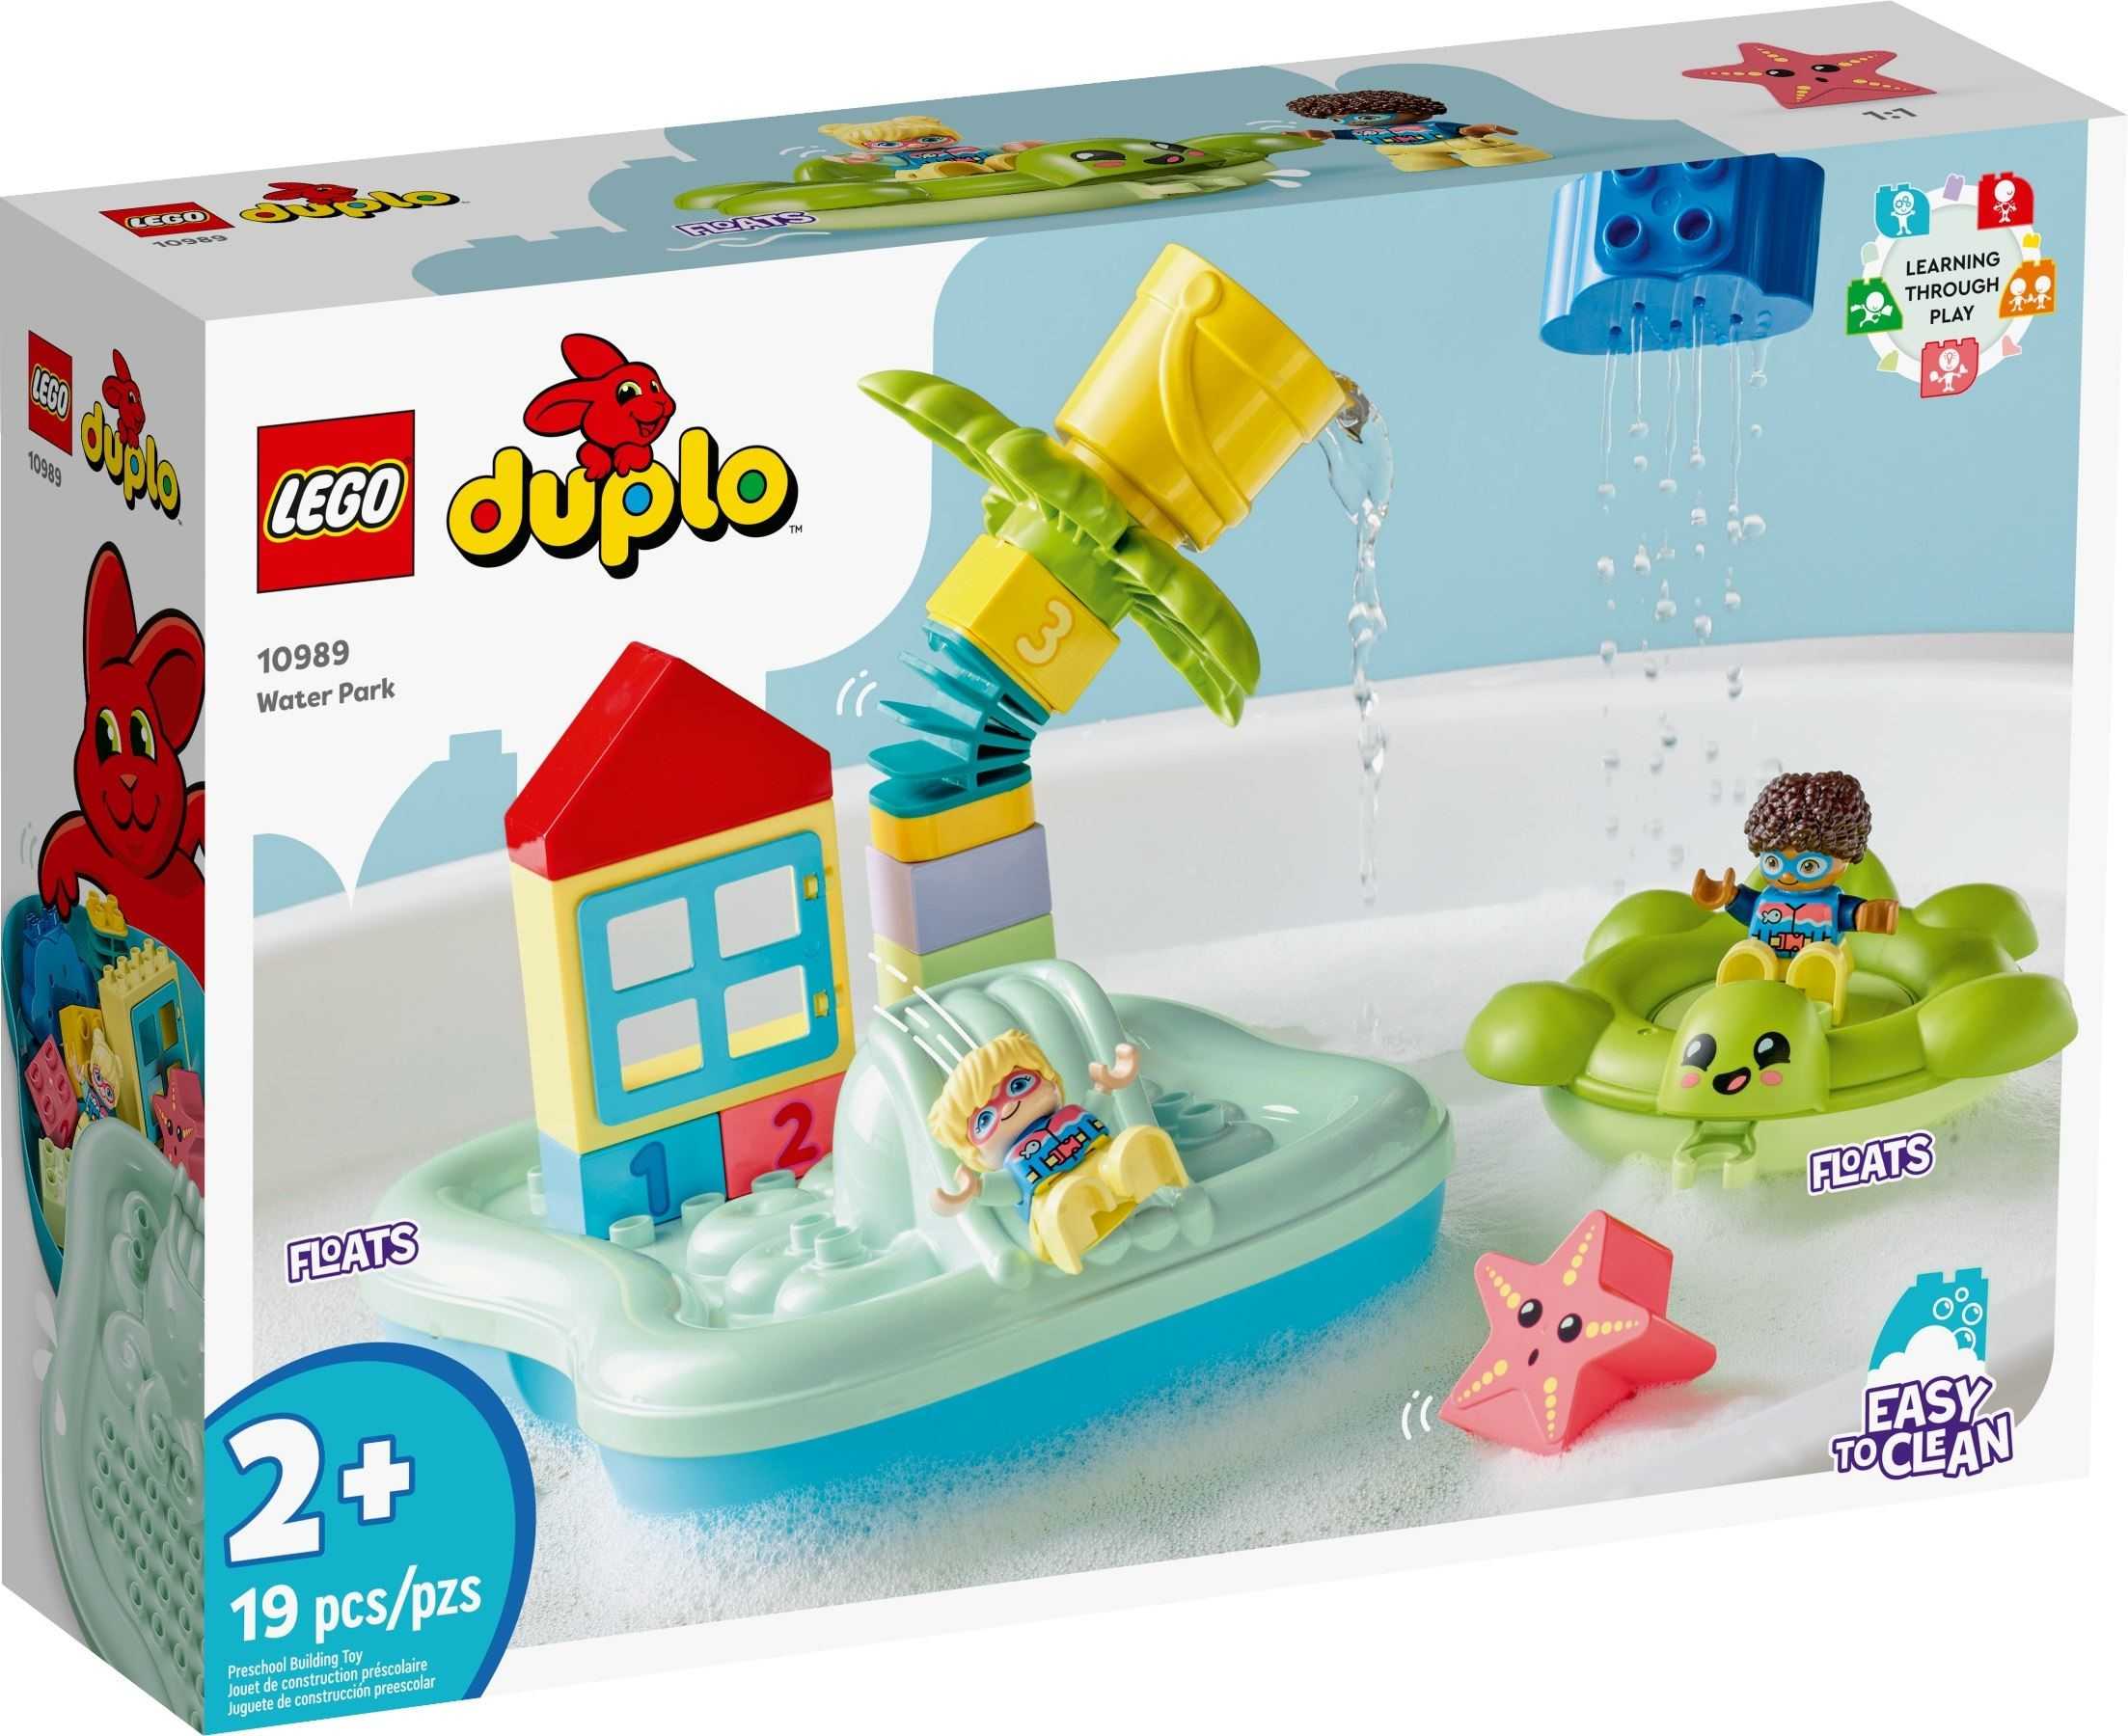 【電積系@北投】LEGO 10989 水上樂園-Duplo